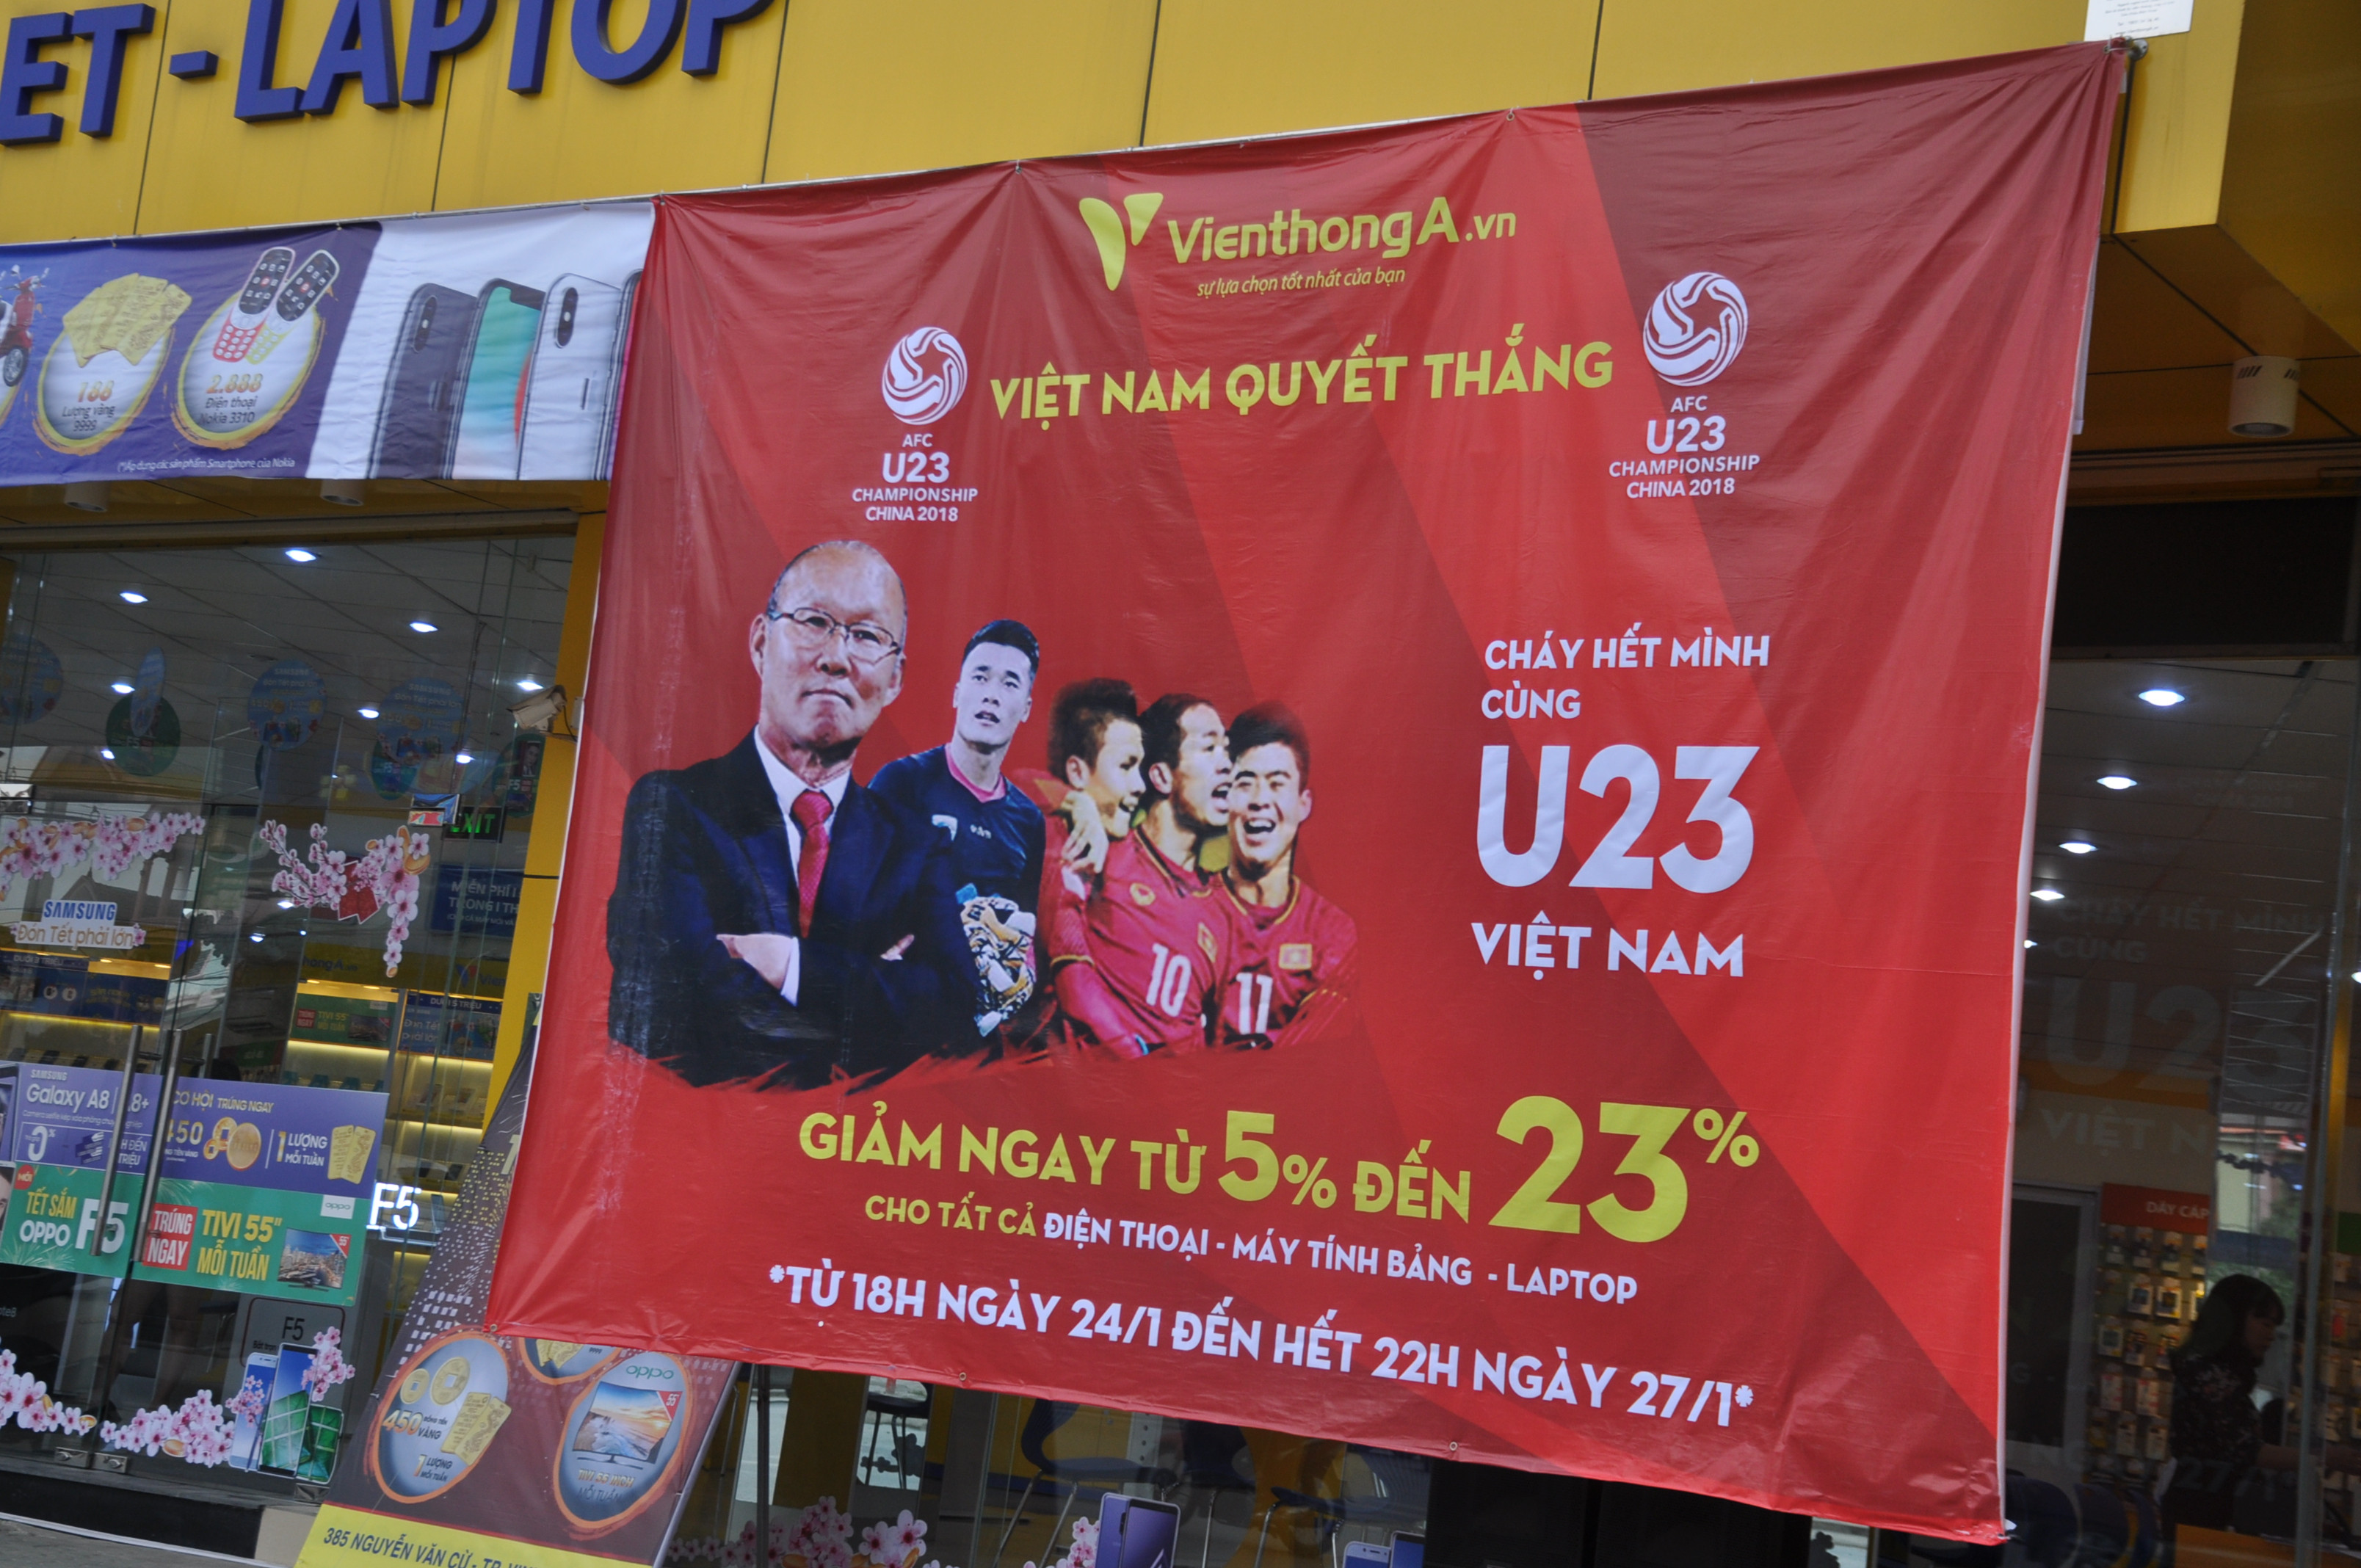 Cháy hết mình cùng U23 Việt Nam, một cửa hàng viễn thông giảm từ 5-23% cho tất cả điện thoại, máy tính lap top. Ảnh: Việt Phương